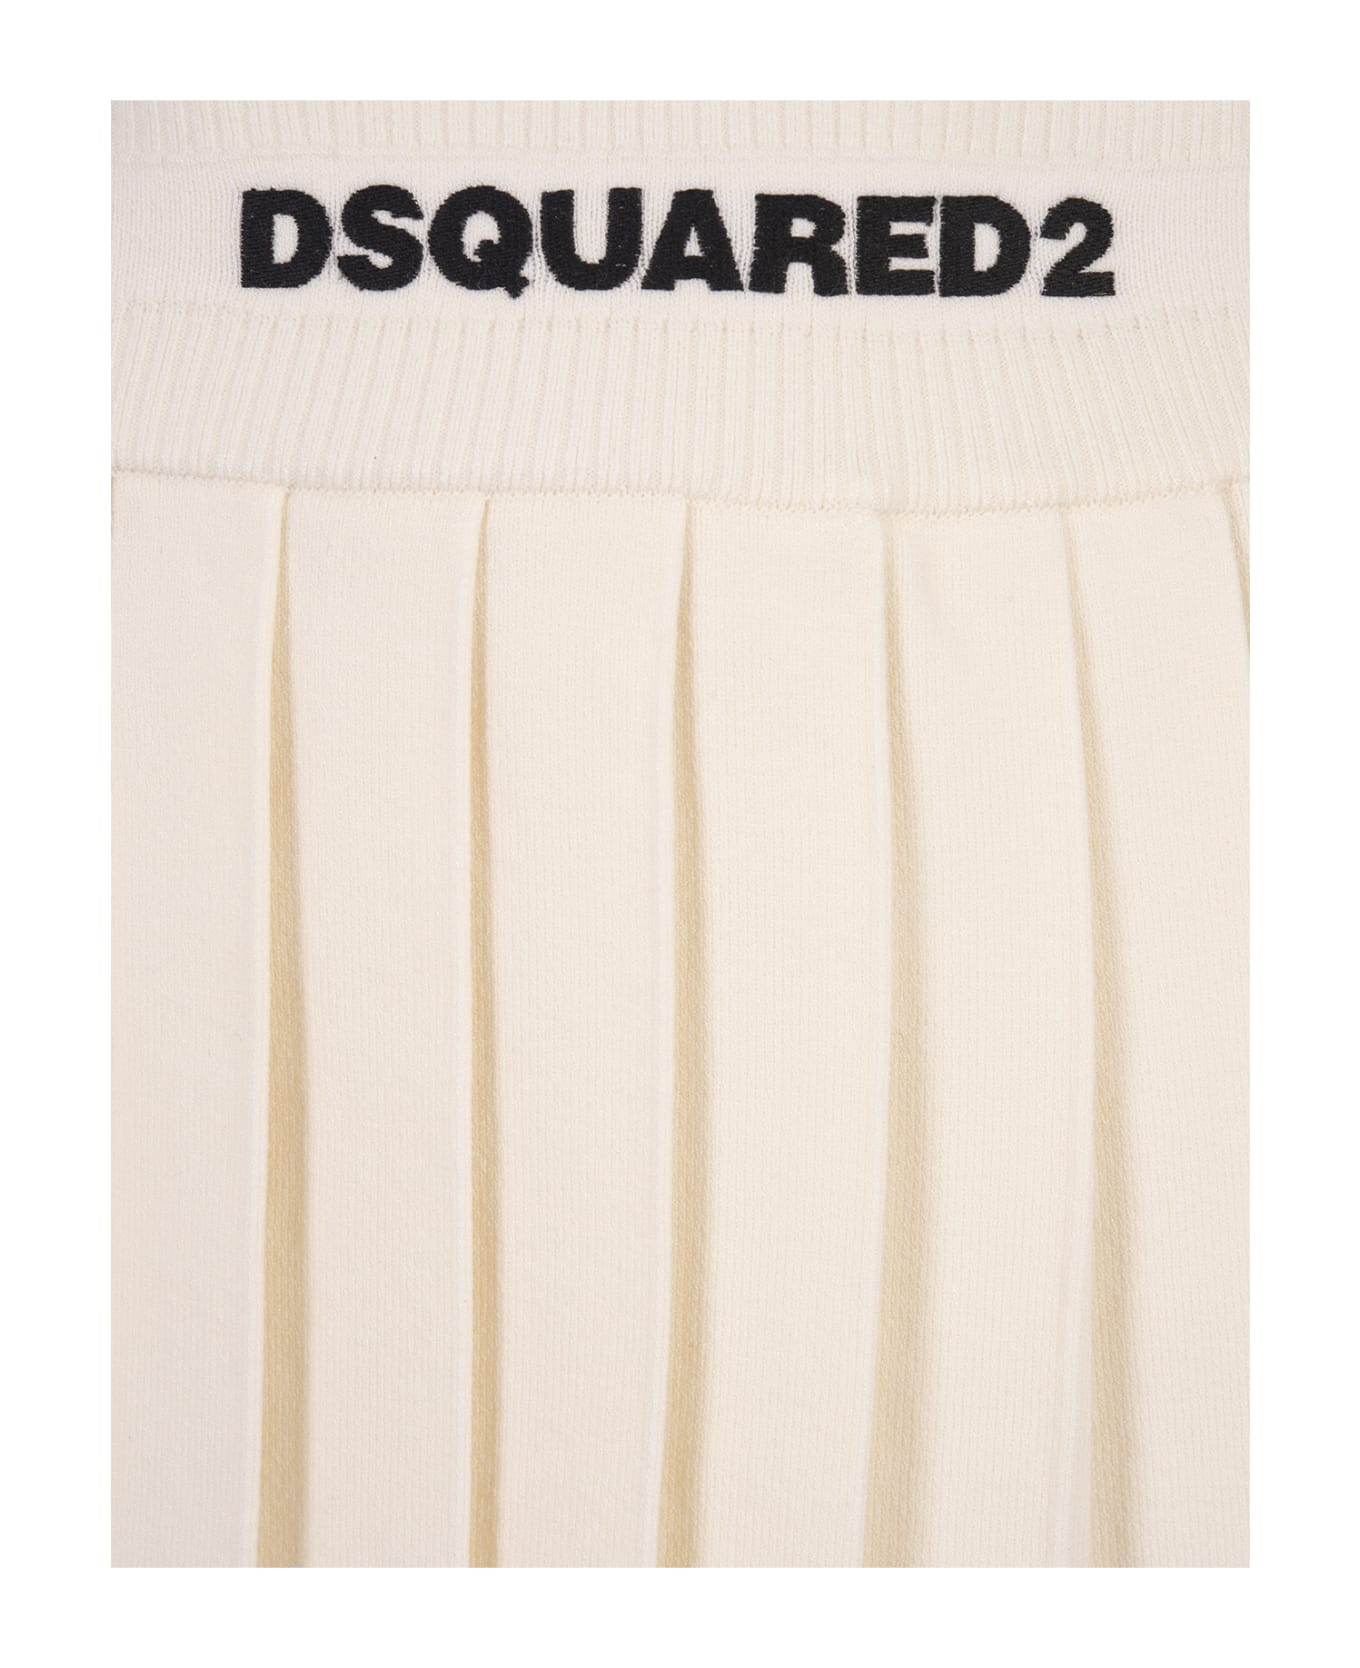 Dsquared2 White Pleated Mini Skirt - White